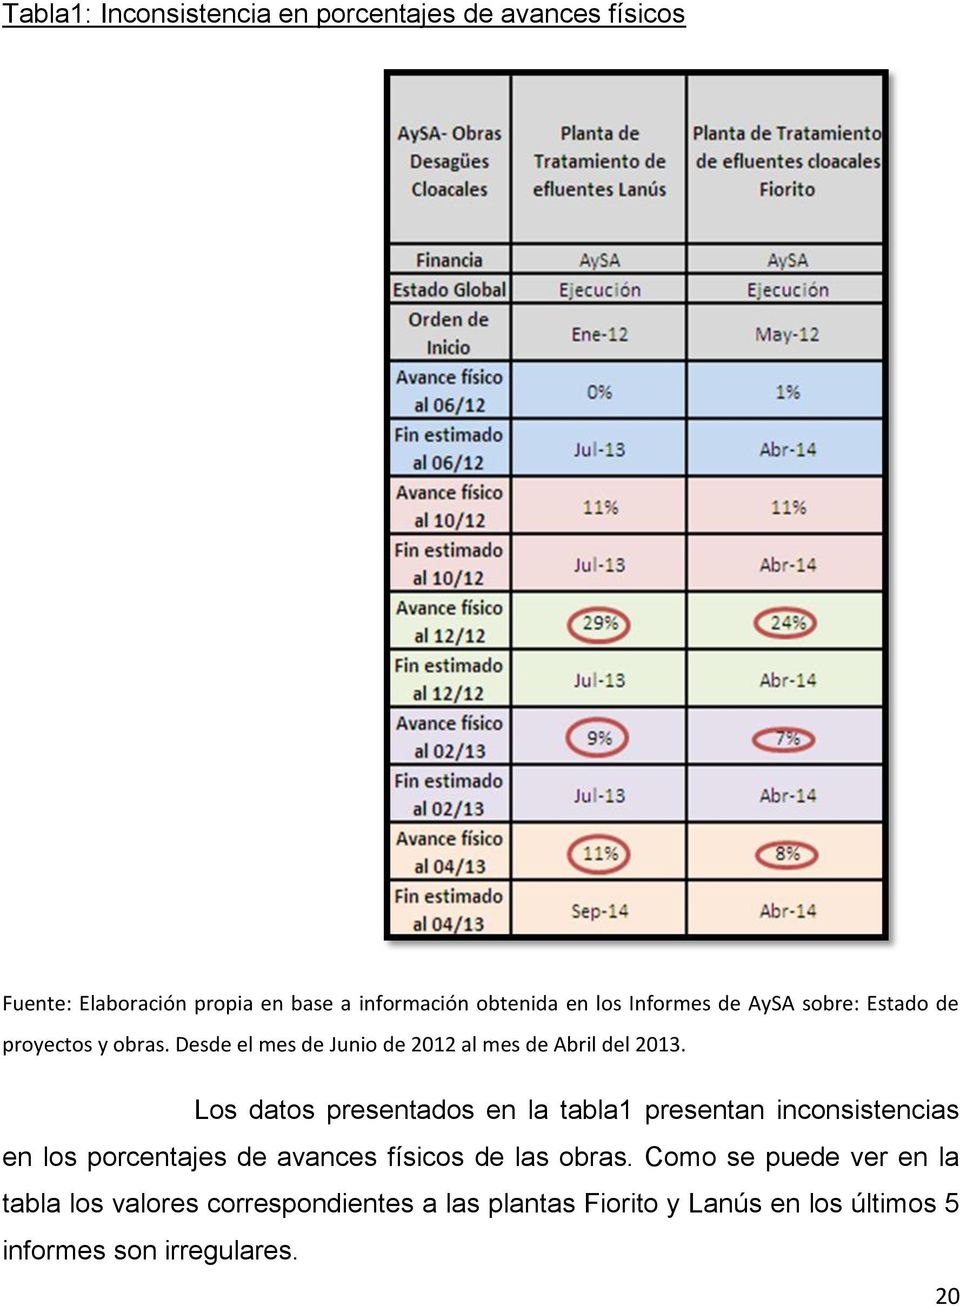 Los datos presentados en la tabla1 presentan inconsistencias en los porcentajes de avances físicos de las obras.